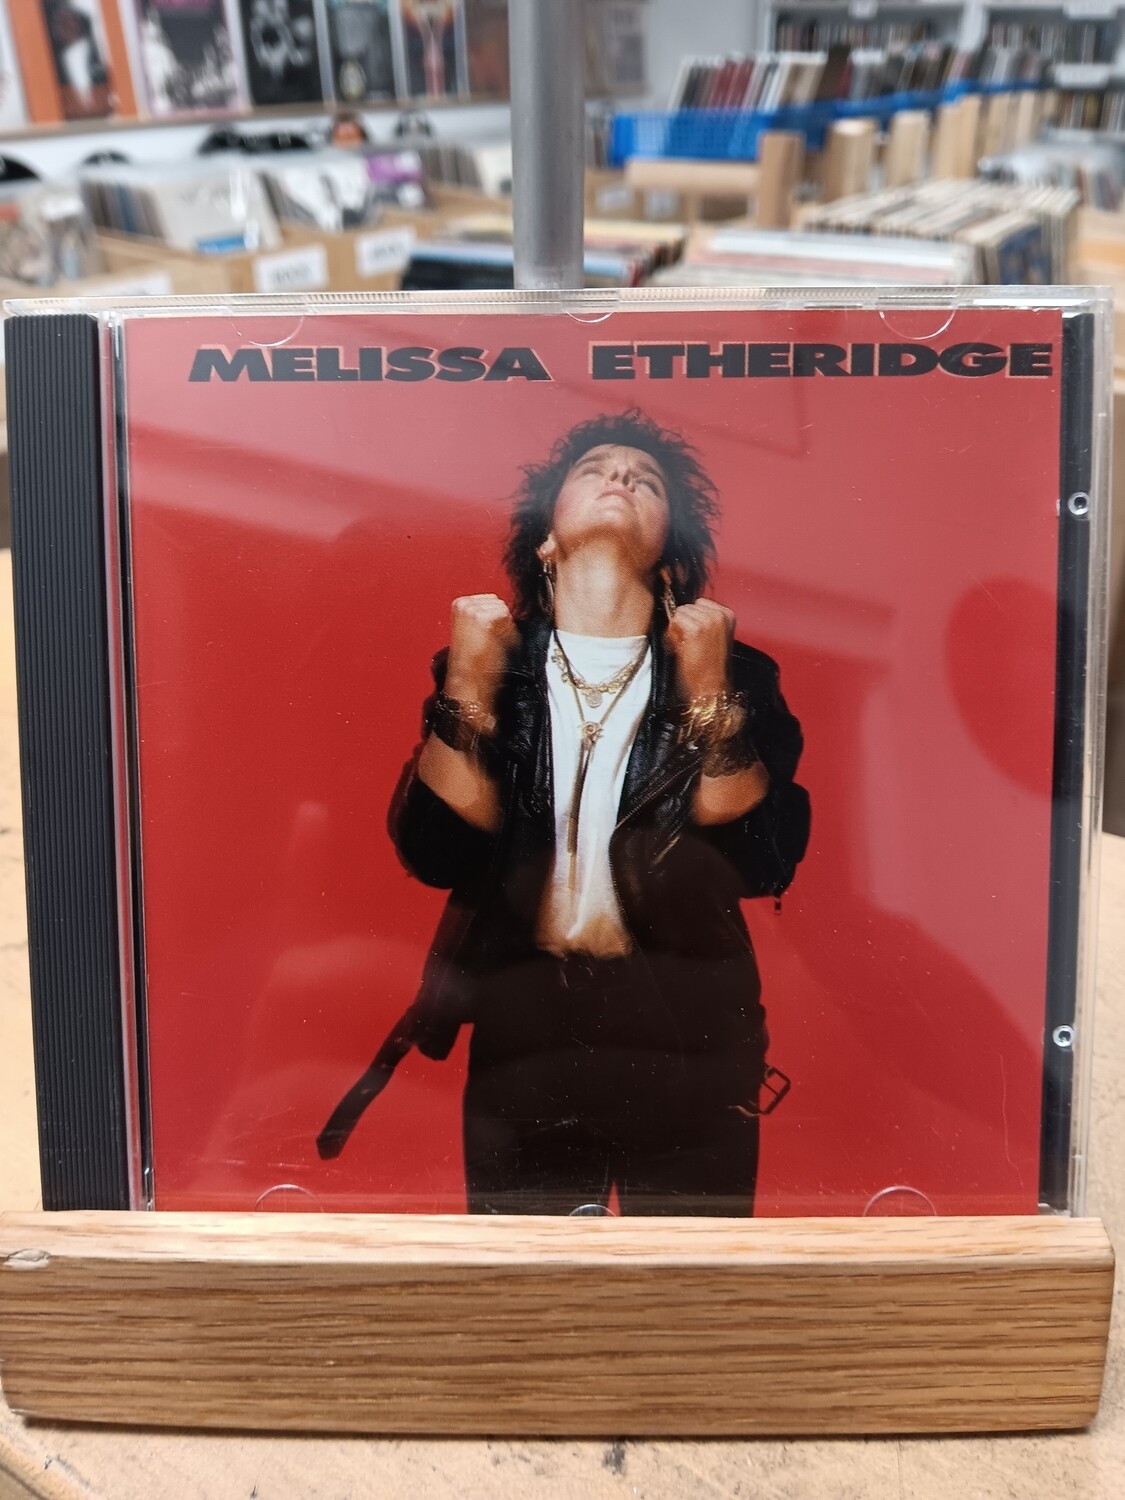 MELISSA ETHERIDGE - Melissa Etheridge (CD)